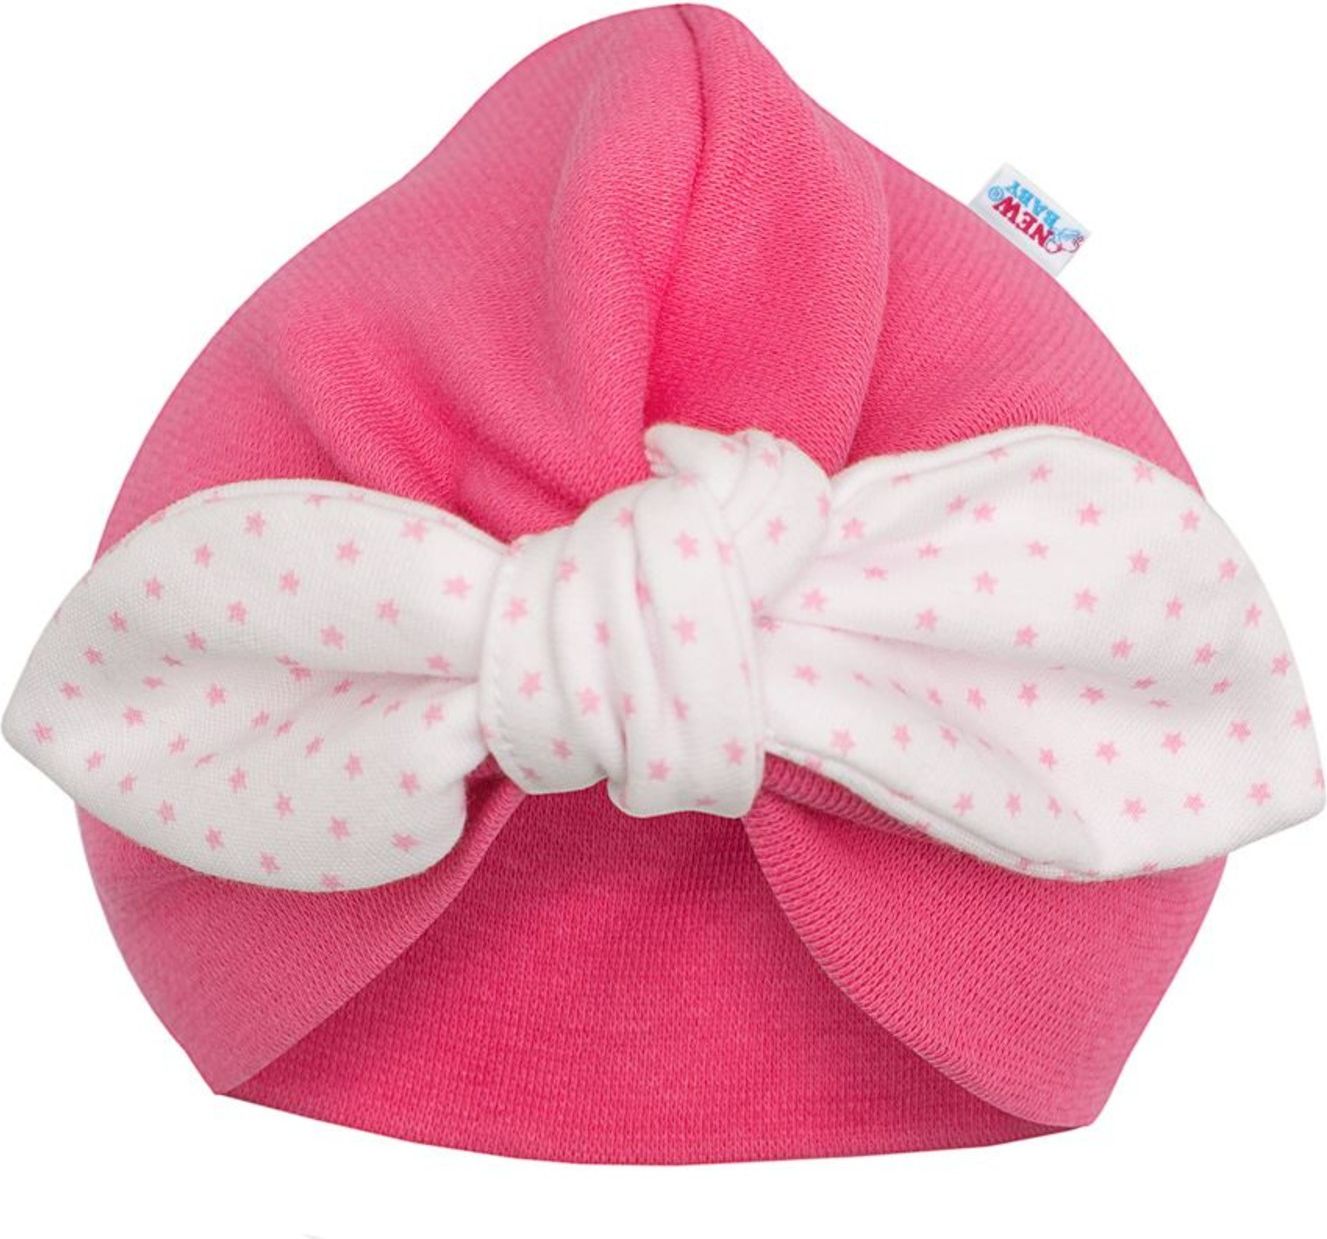 Dívčí čepička turban New Baby For Girls dots - Dívčí čepička turban New Baby For Girls dots - obrázek 1